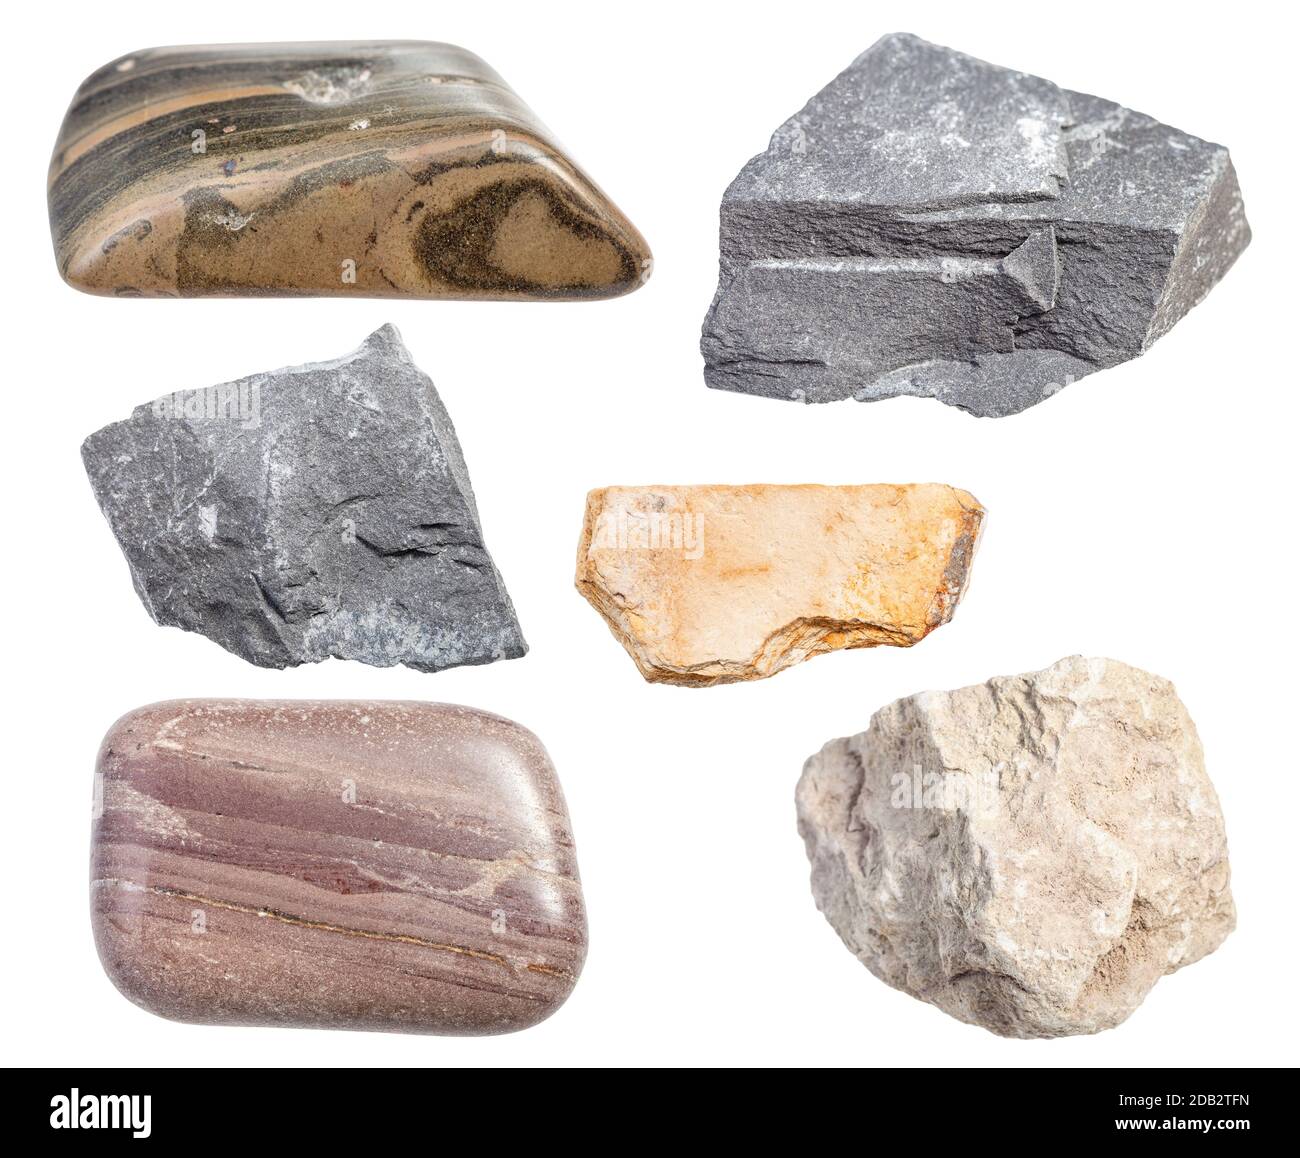 set of various mudstone rocks isolated on white background Stock Photo